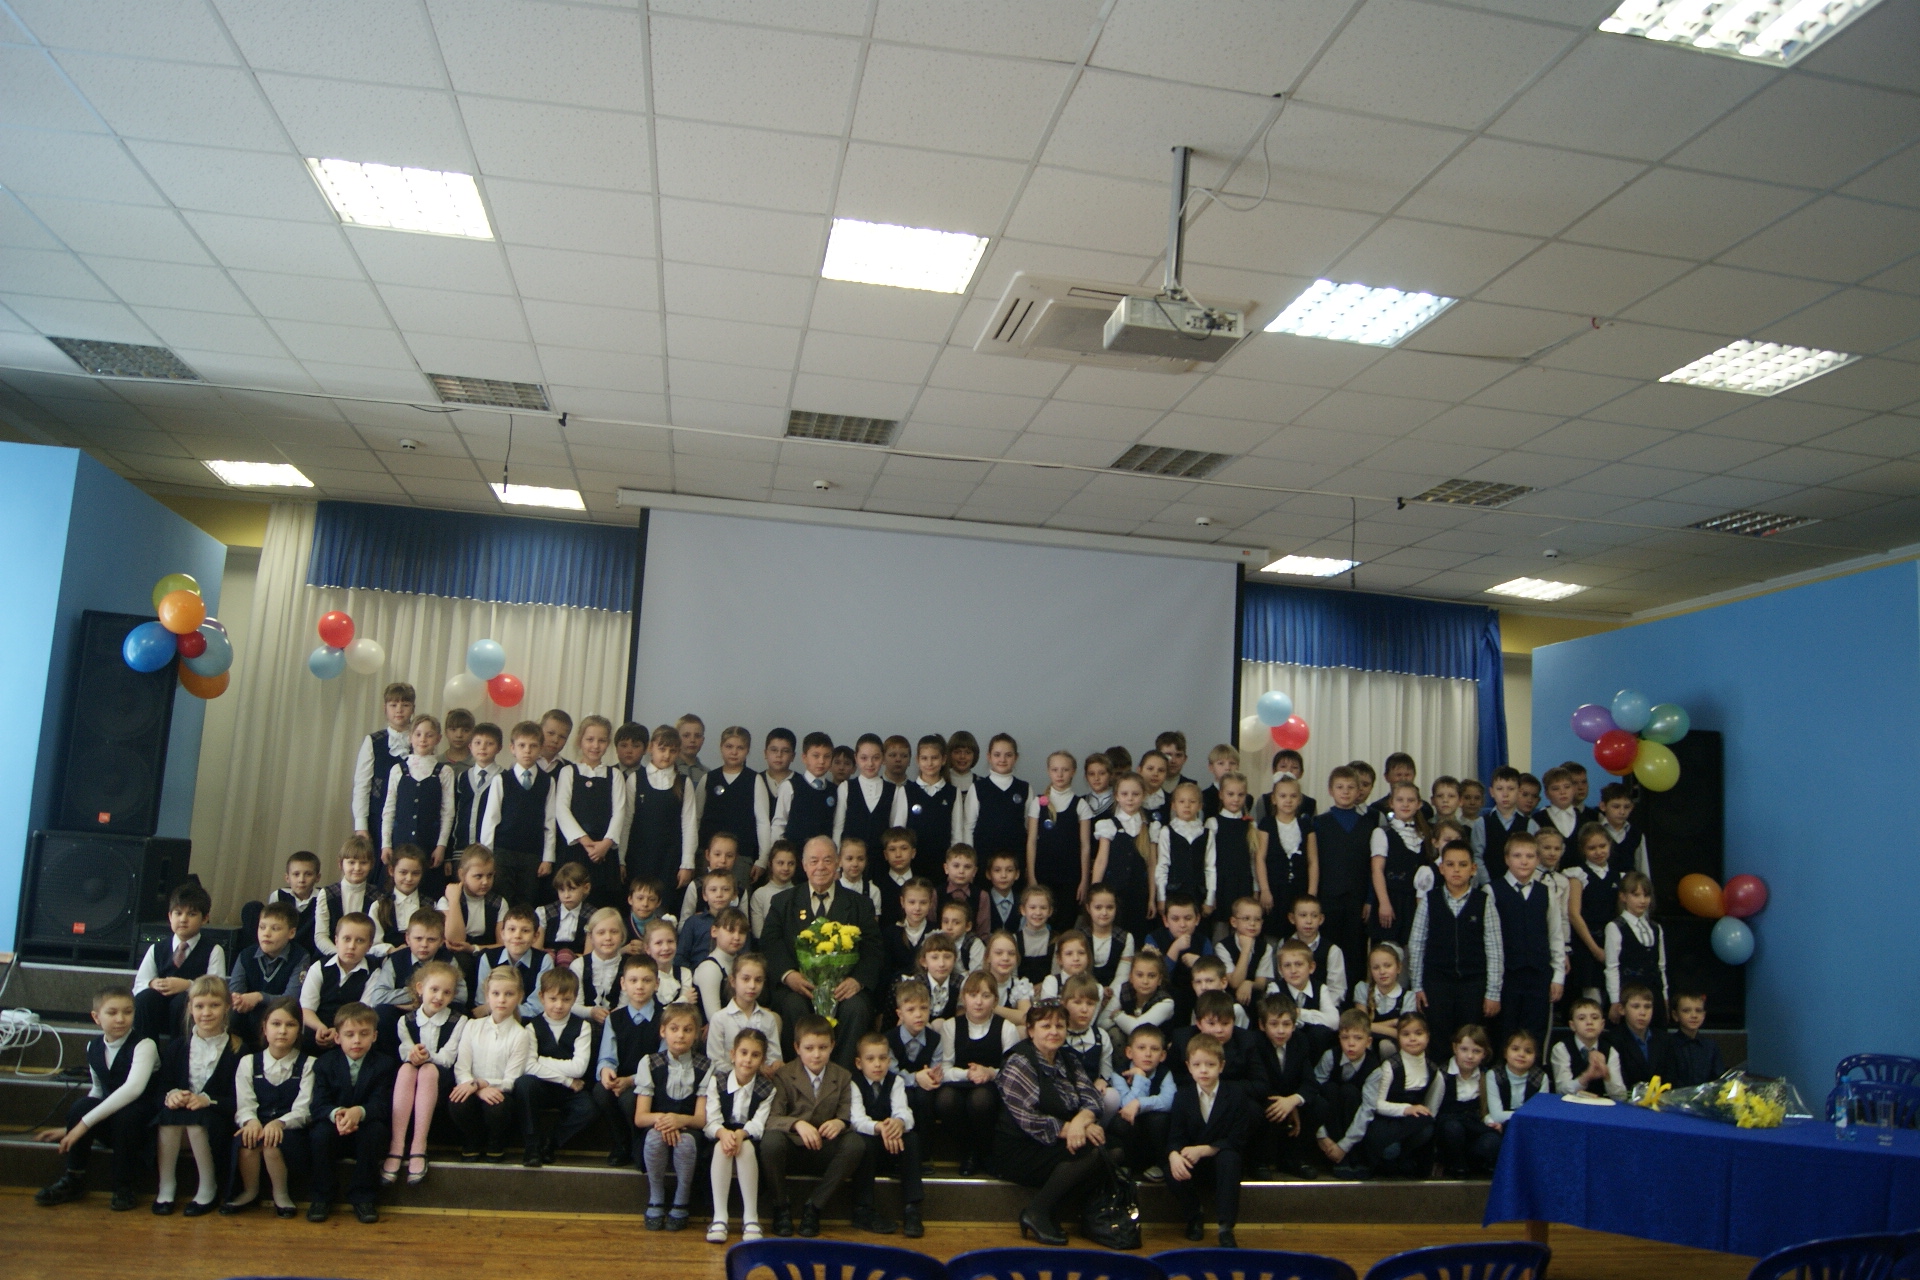 фото директора школы 94 в ярославле